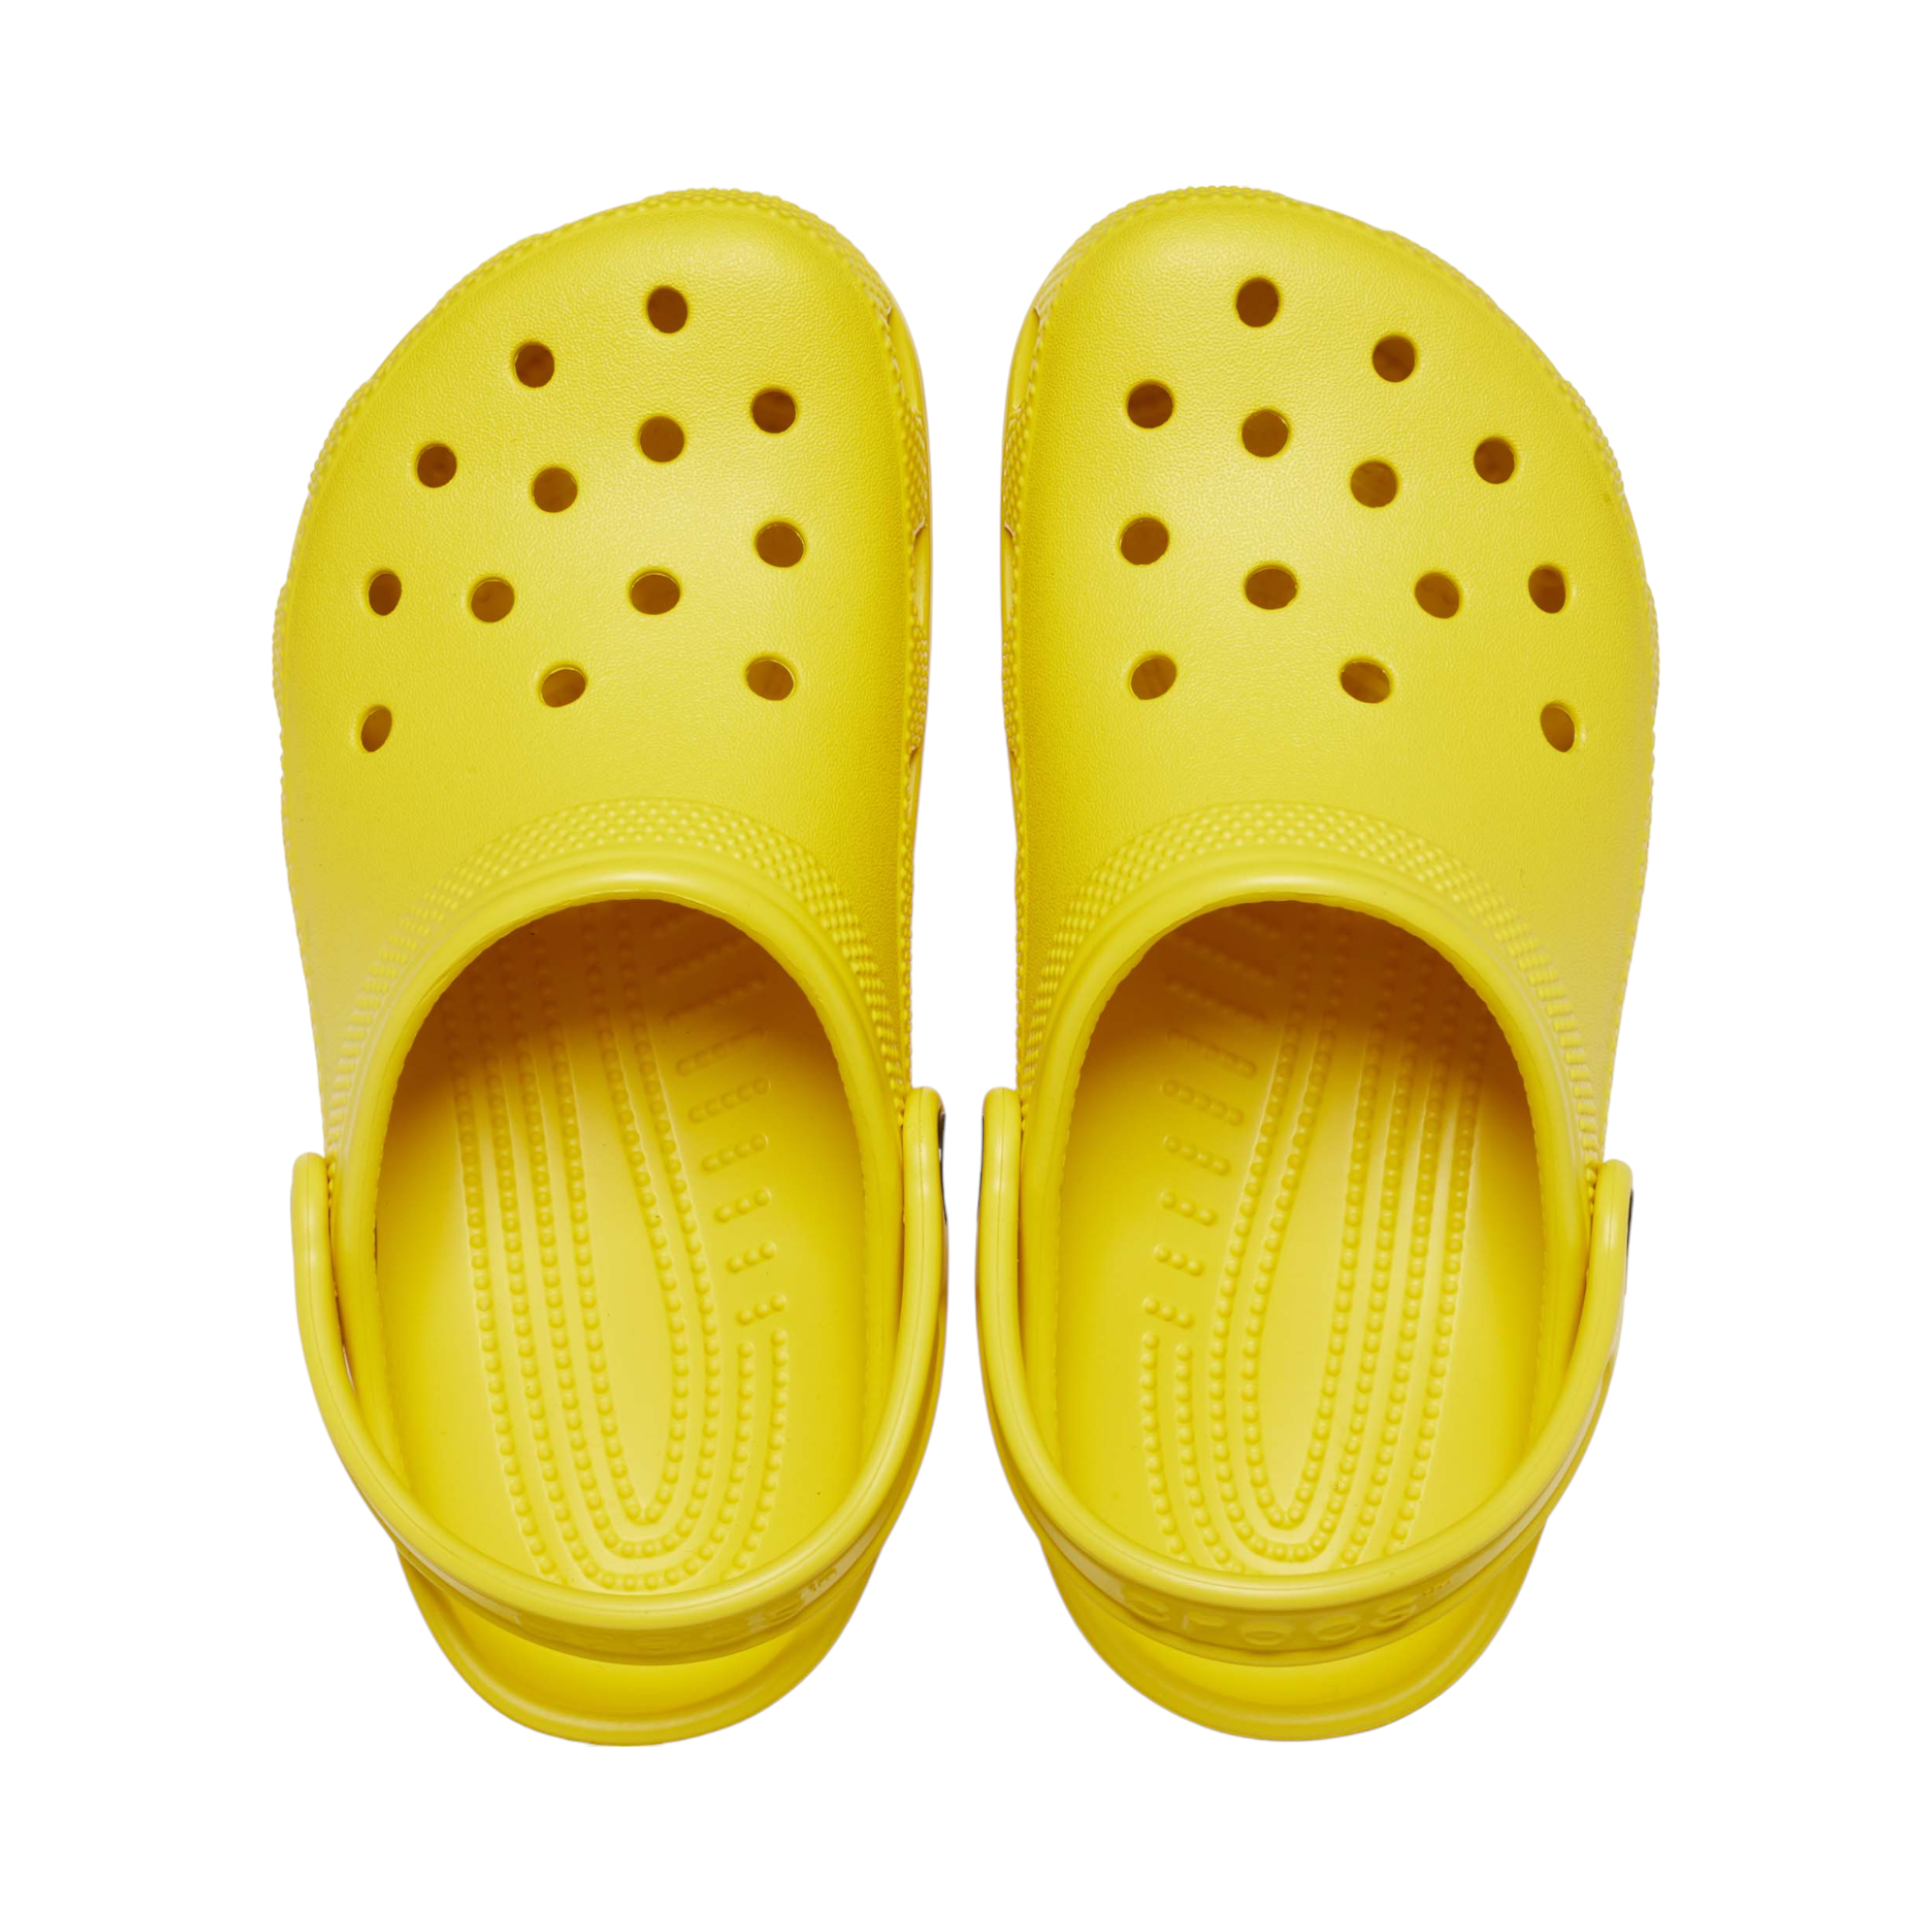 Men's Crocs Sandals: Comfort & Style Combined